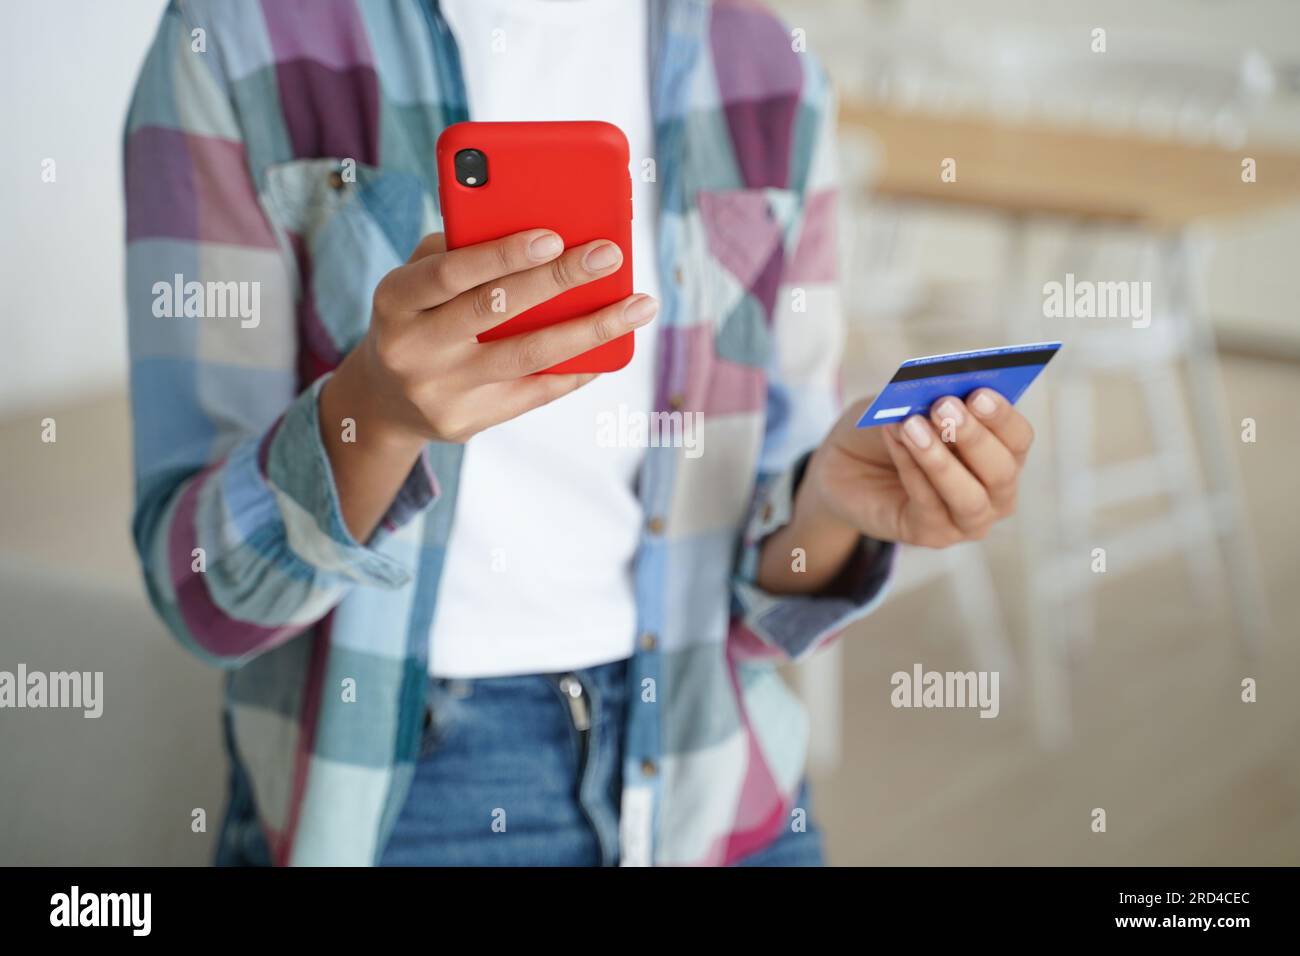 Shopping online sicuro: Mani in mano con carta di credito, smartphone. Pagamenti sicuri in ambienti chiusi. Foto Stock